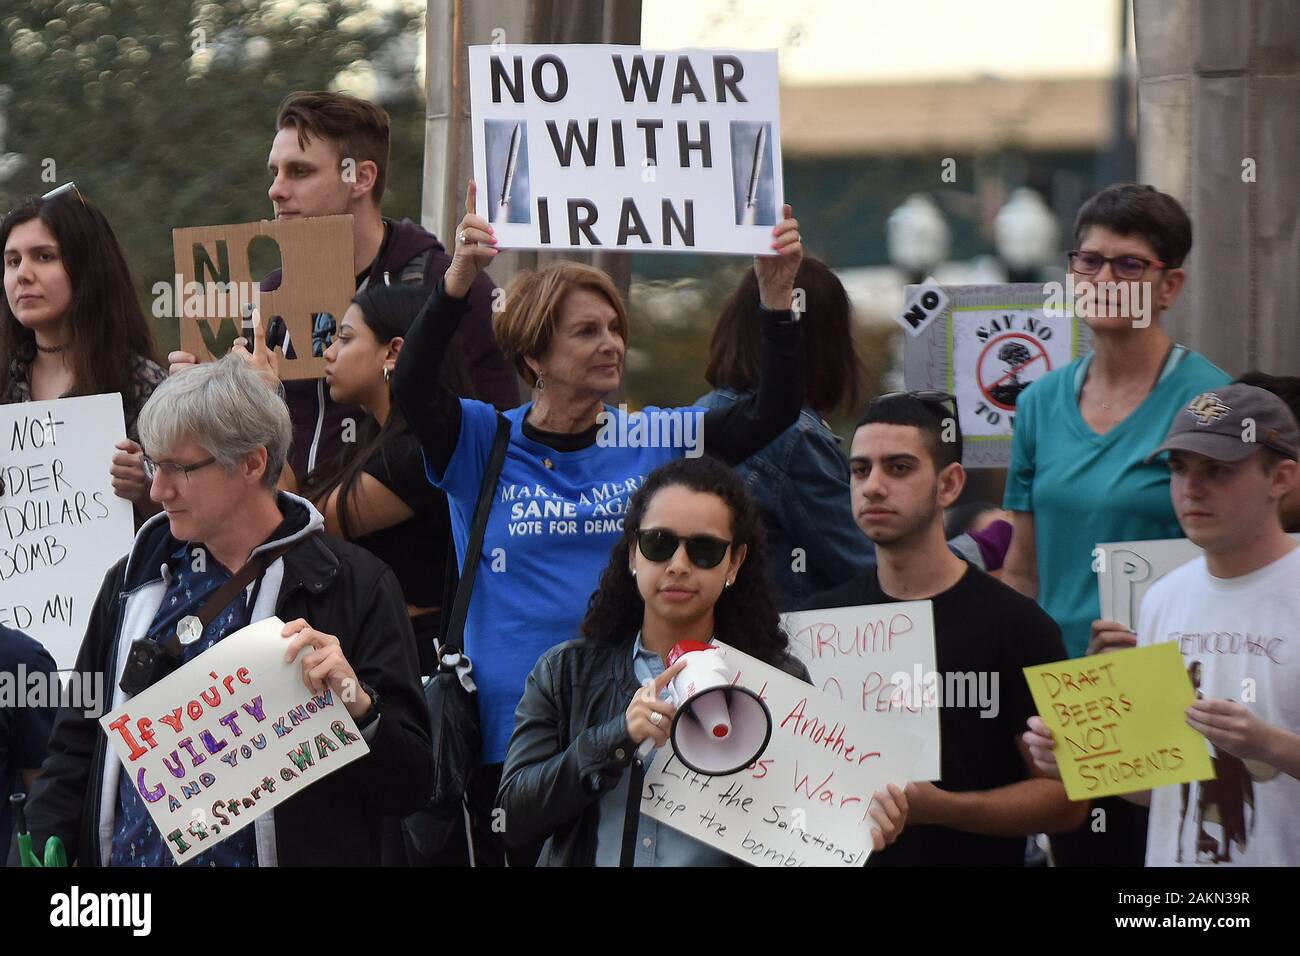 Les manifestants tiennent des affiches pendant la manifestation.protester contre une éventuelle guerre entre les États-Unis et l'Iran. Des manifestations anti-guerre ont eu lieu aujourd'hui à travers le pays à la suite du président américain Donald Trump's de la commande de l'assassinat d'un haut général de l'Iran en Irak, et l'escalade des tensions entre les deux pays. Banque D'Images